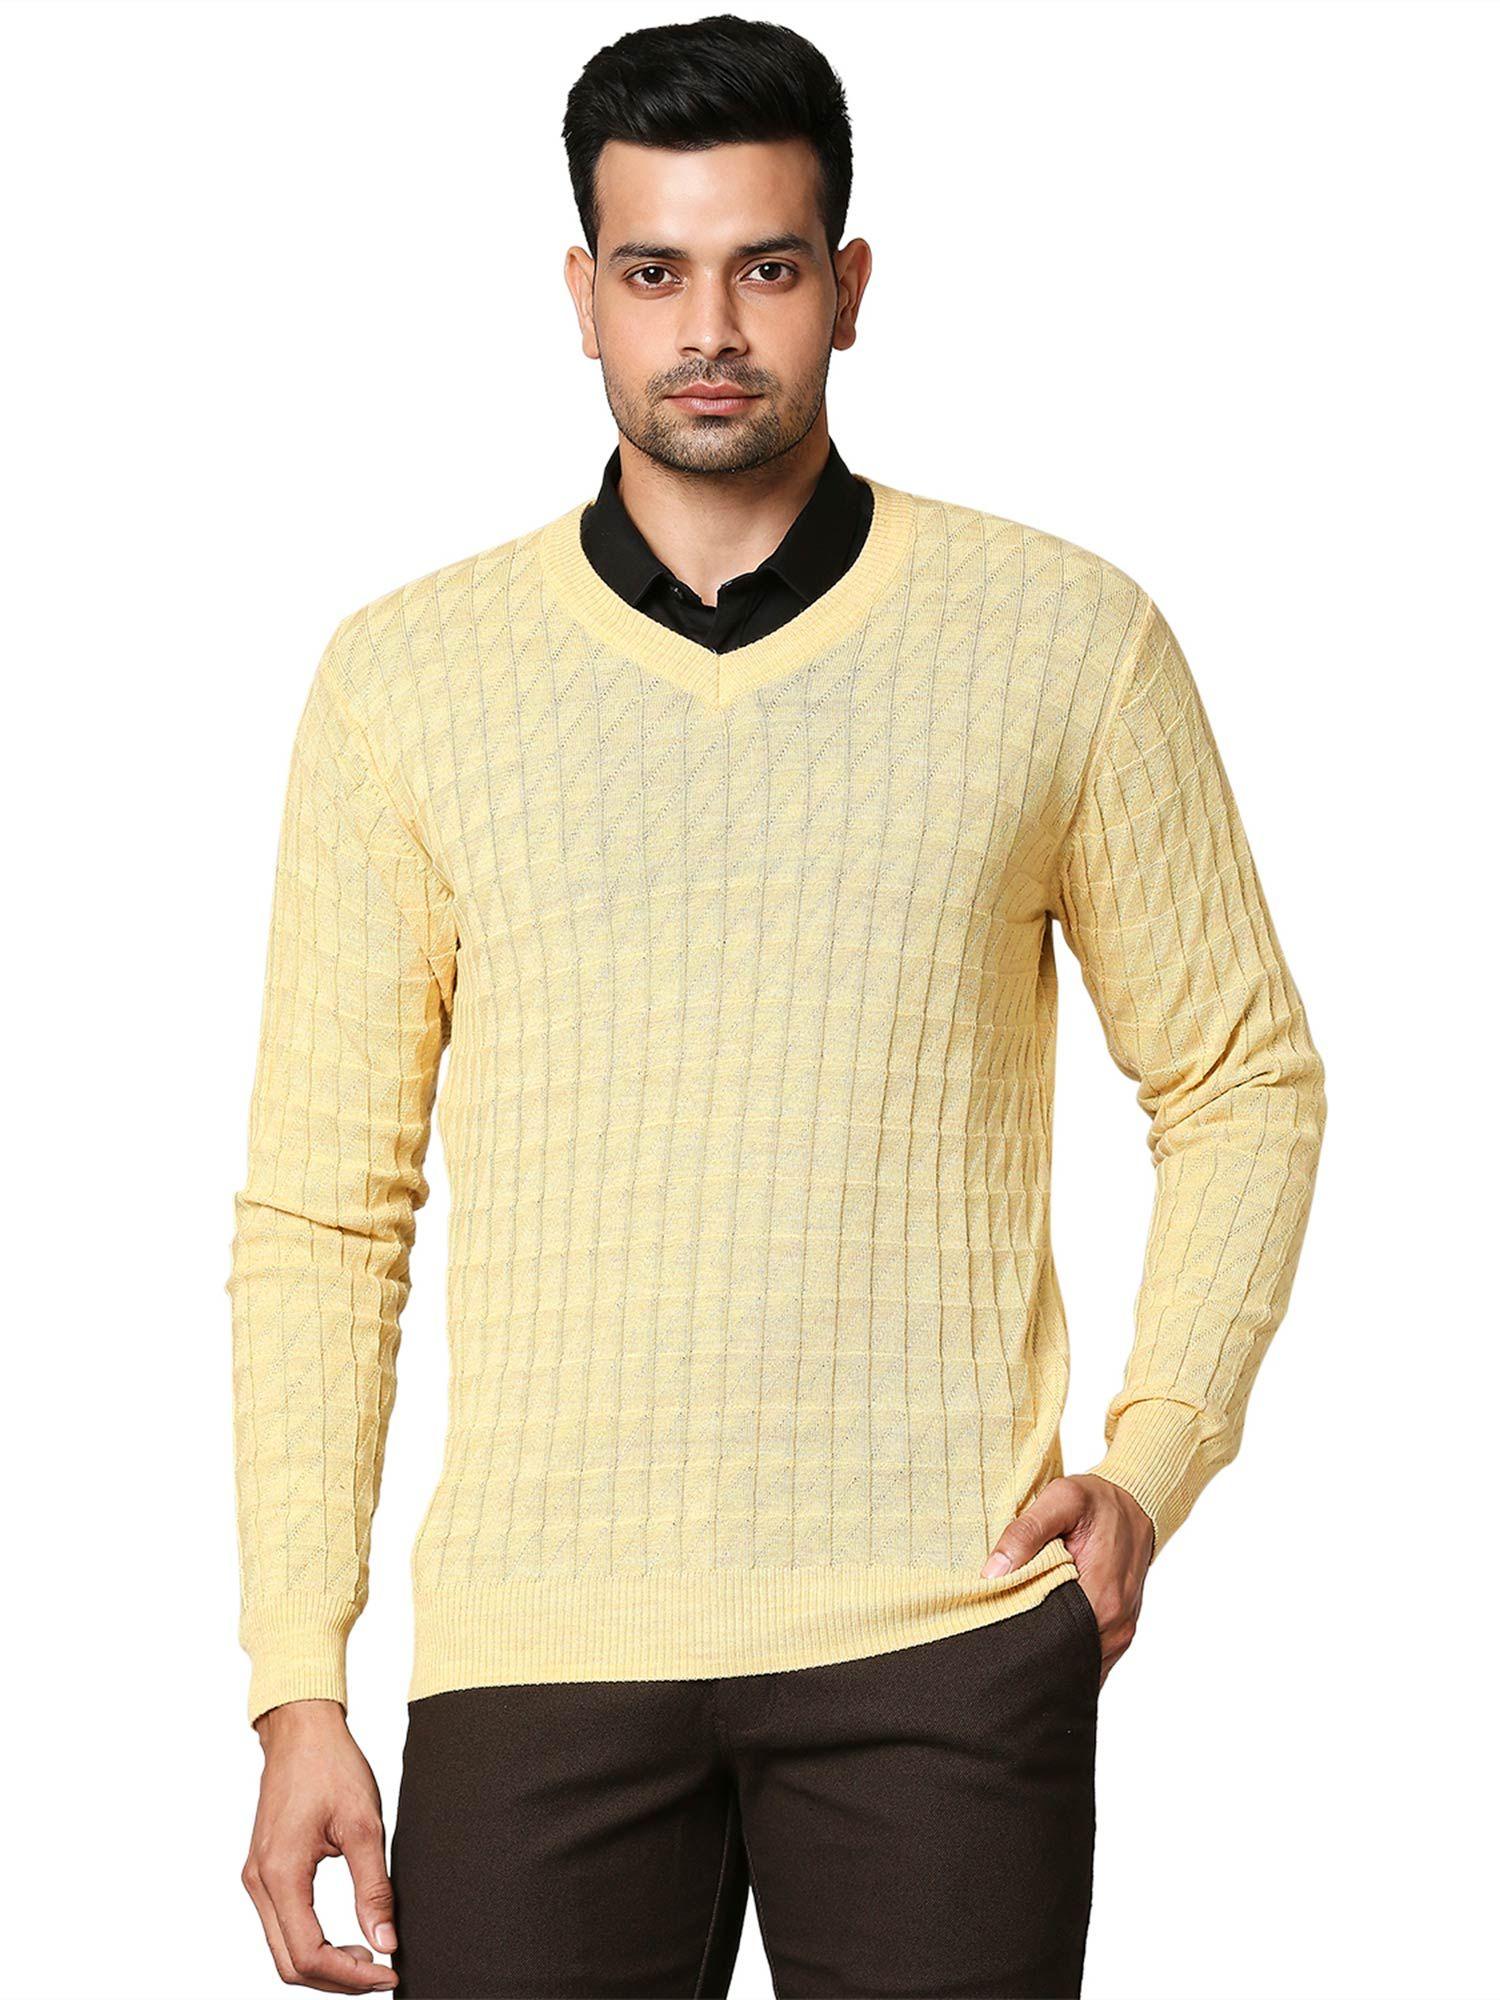 medium yellow sweater